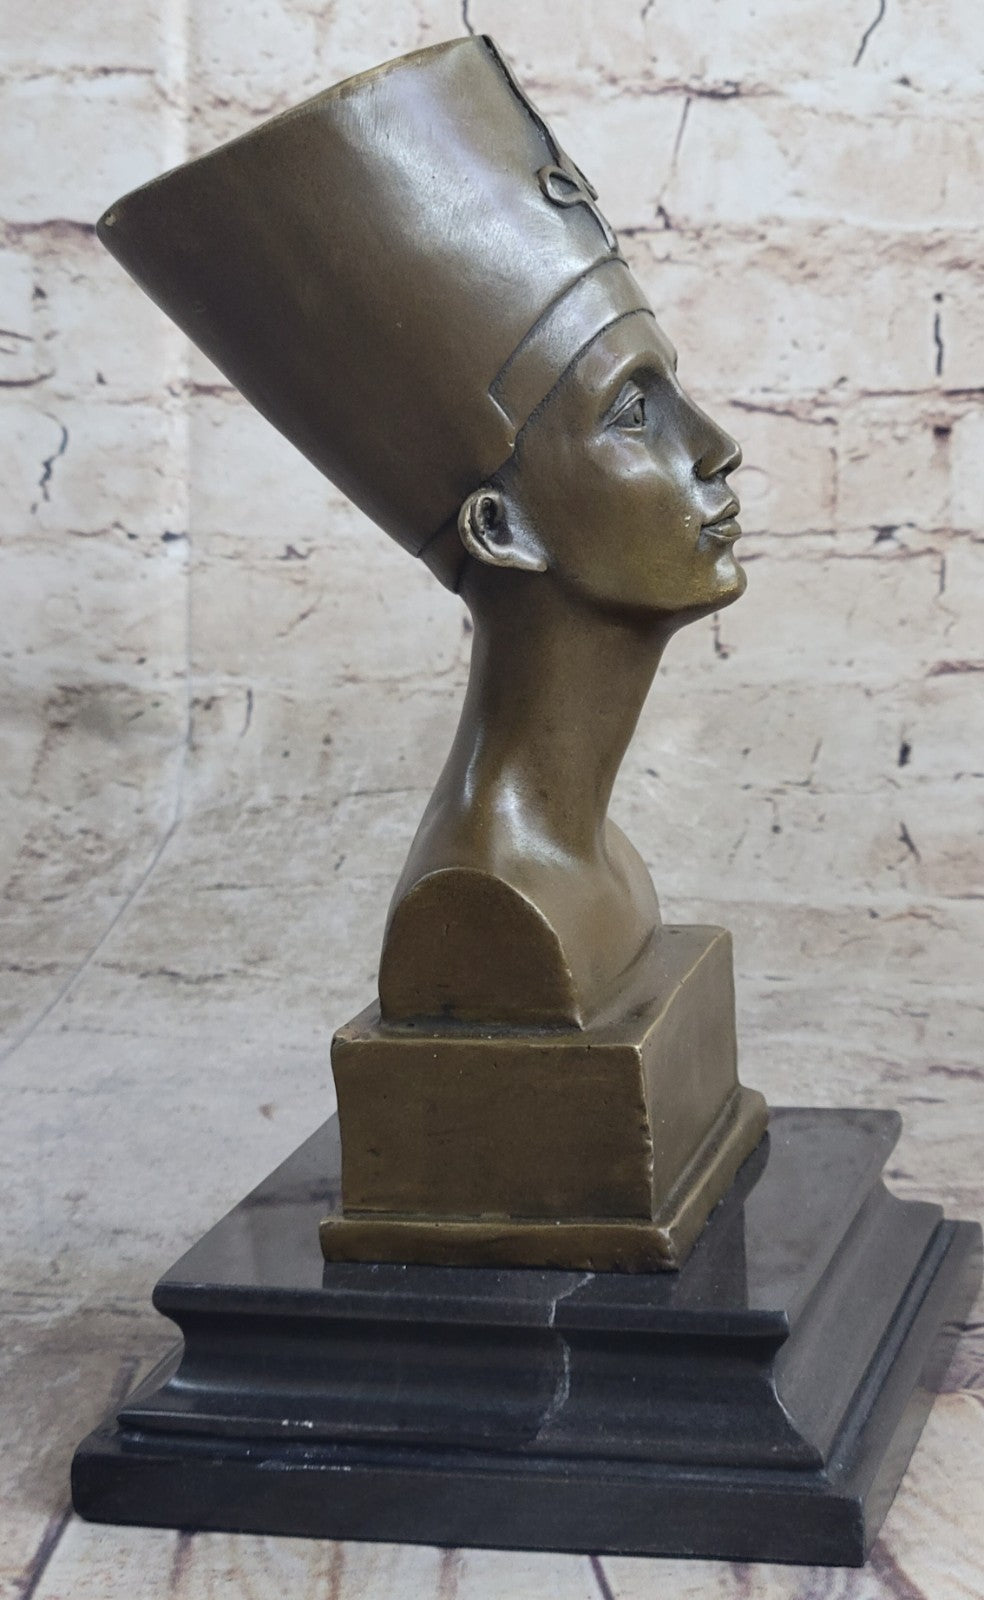 Hot Cast European Made Nefertiti Bust Bronze Masterpiece Sculpture Figurine Sale